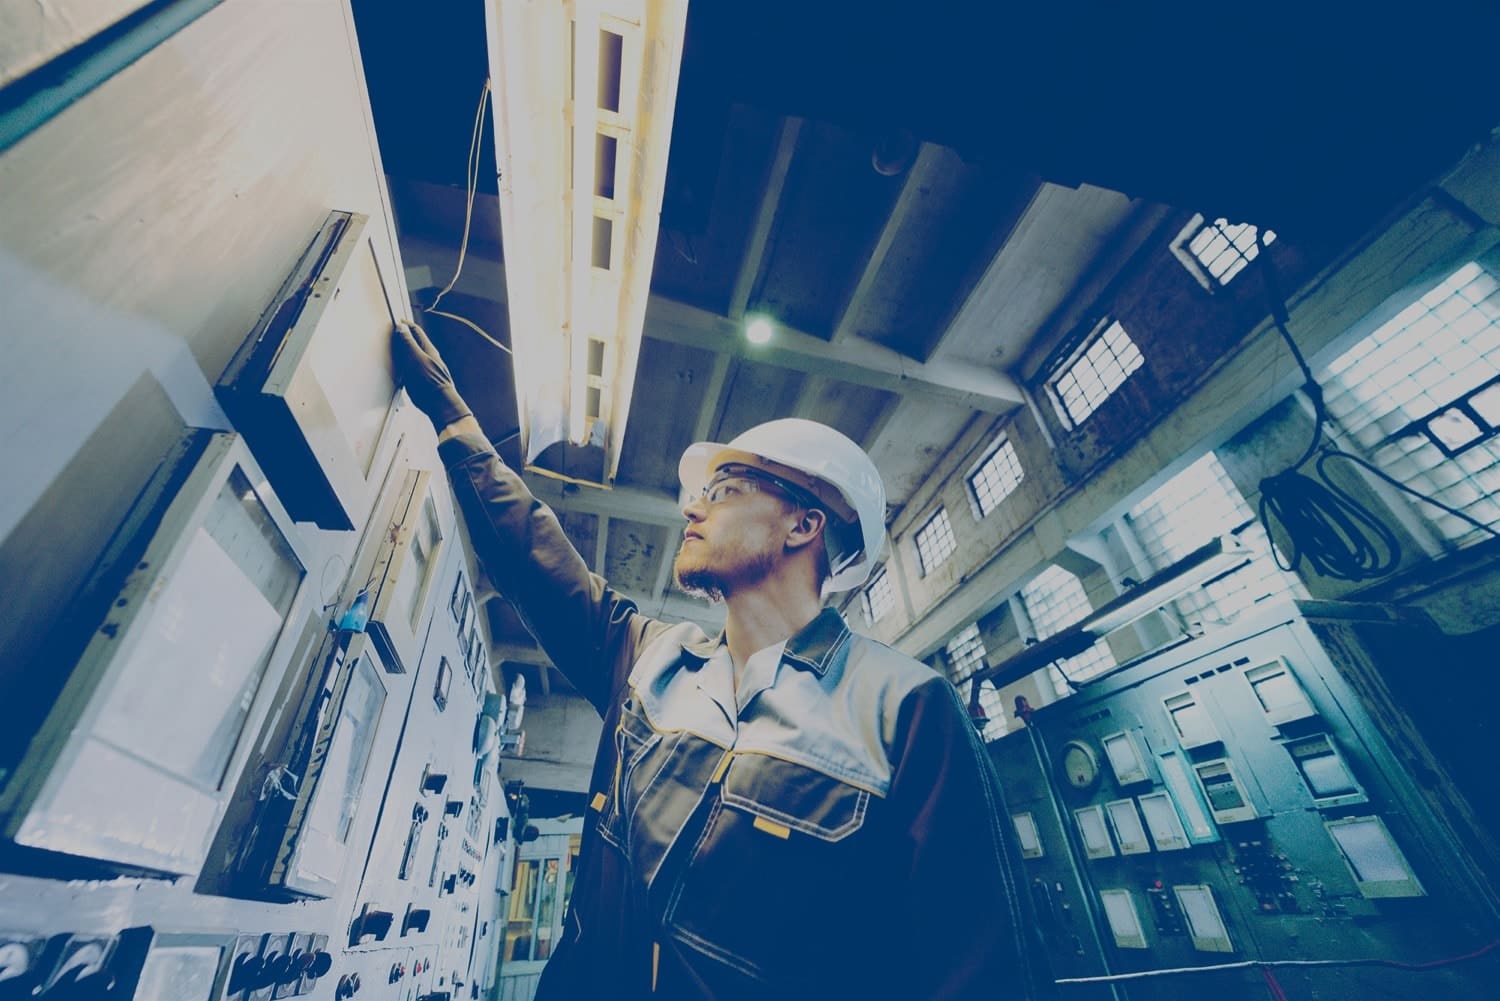 Un travailleur masculin dans un casque blanc contrôle de l'équipement électronique dans un grand bâtiment